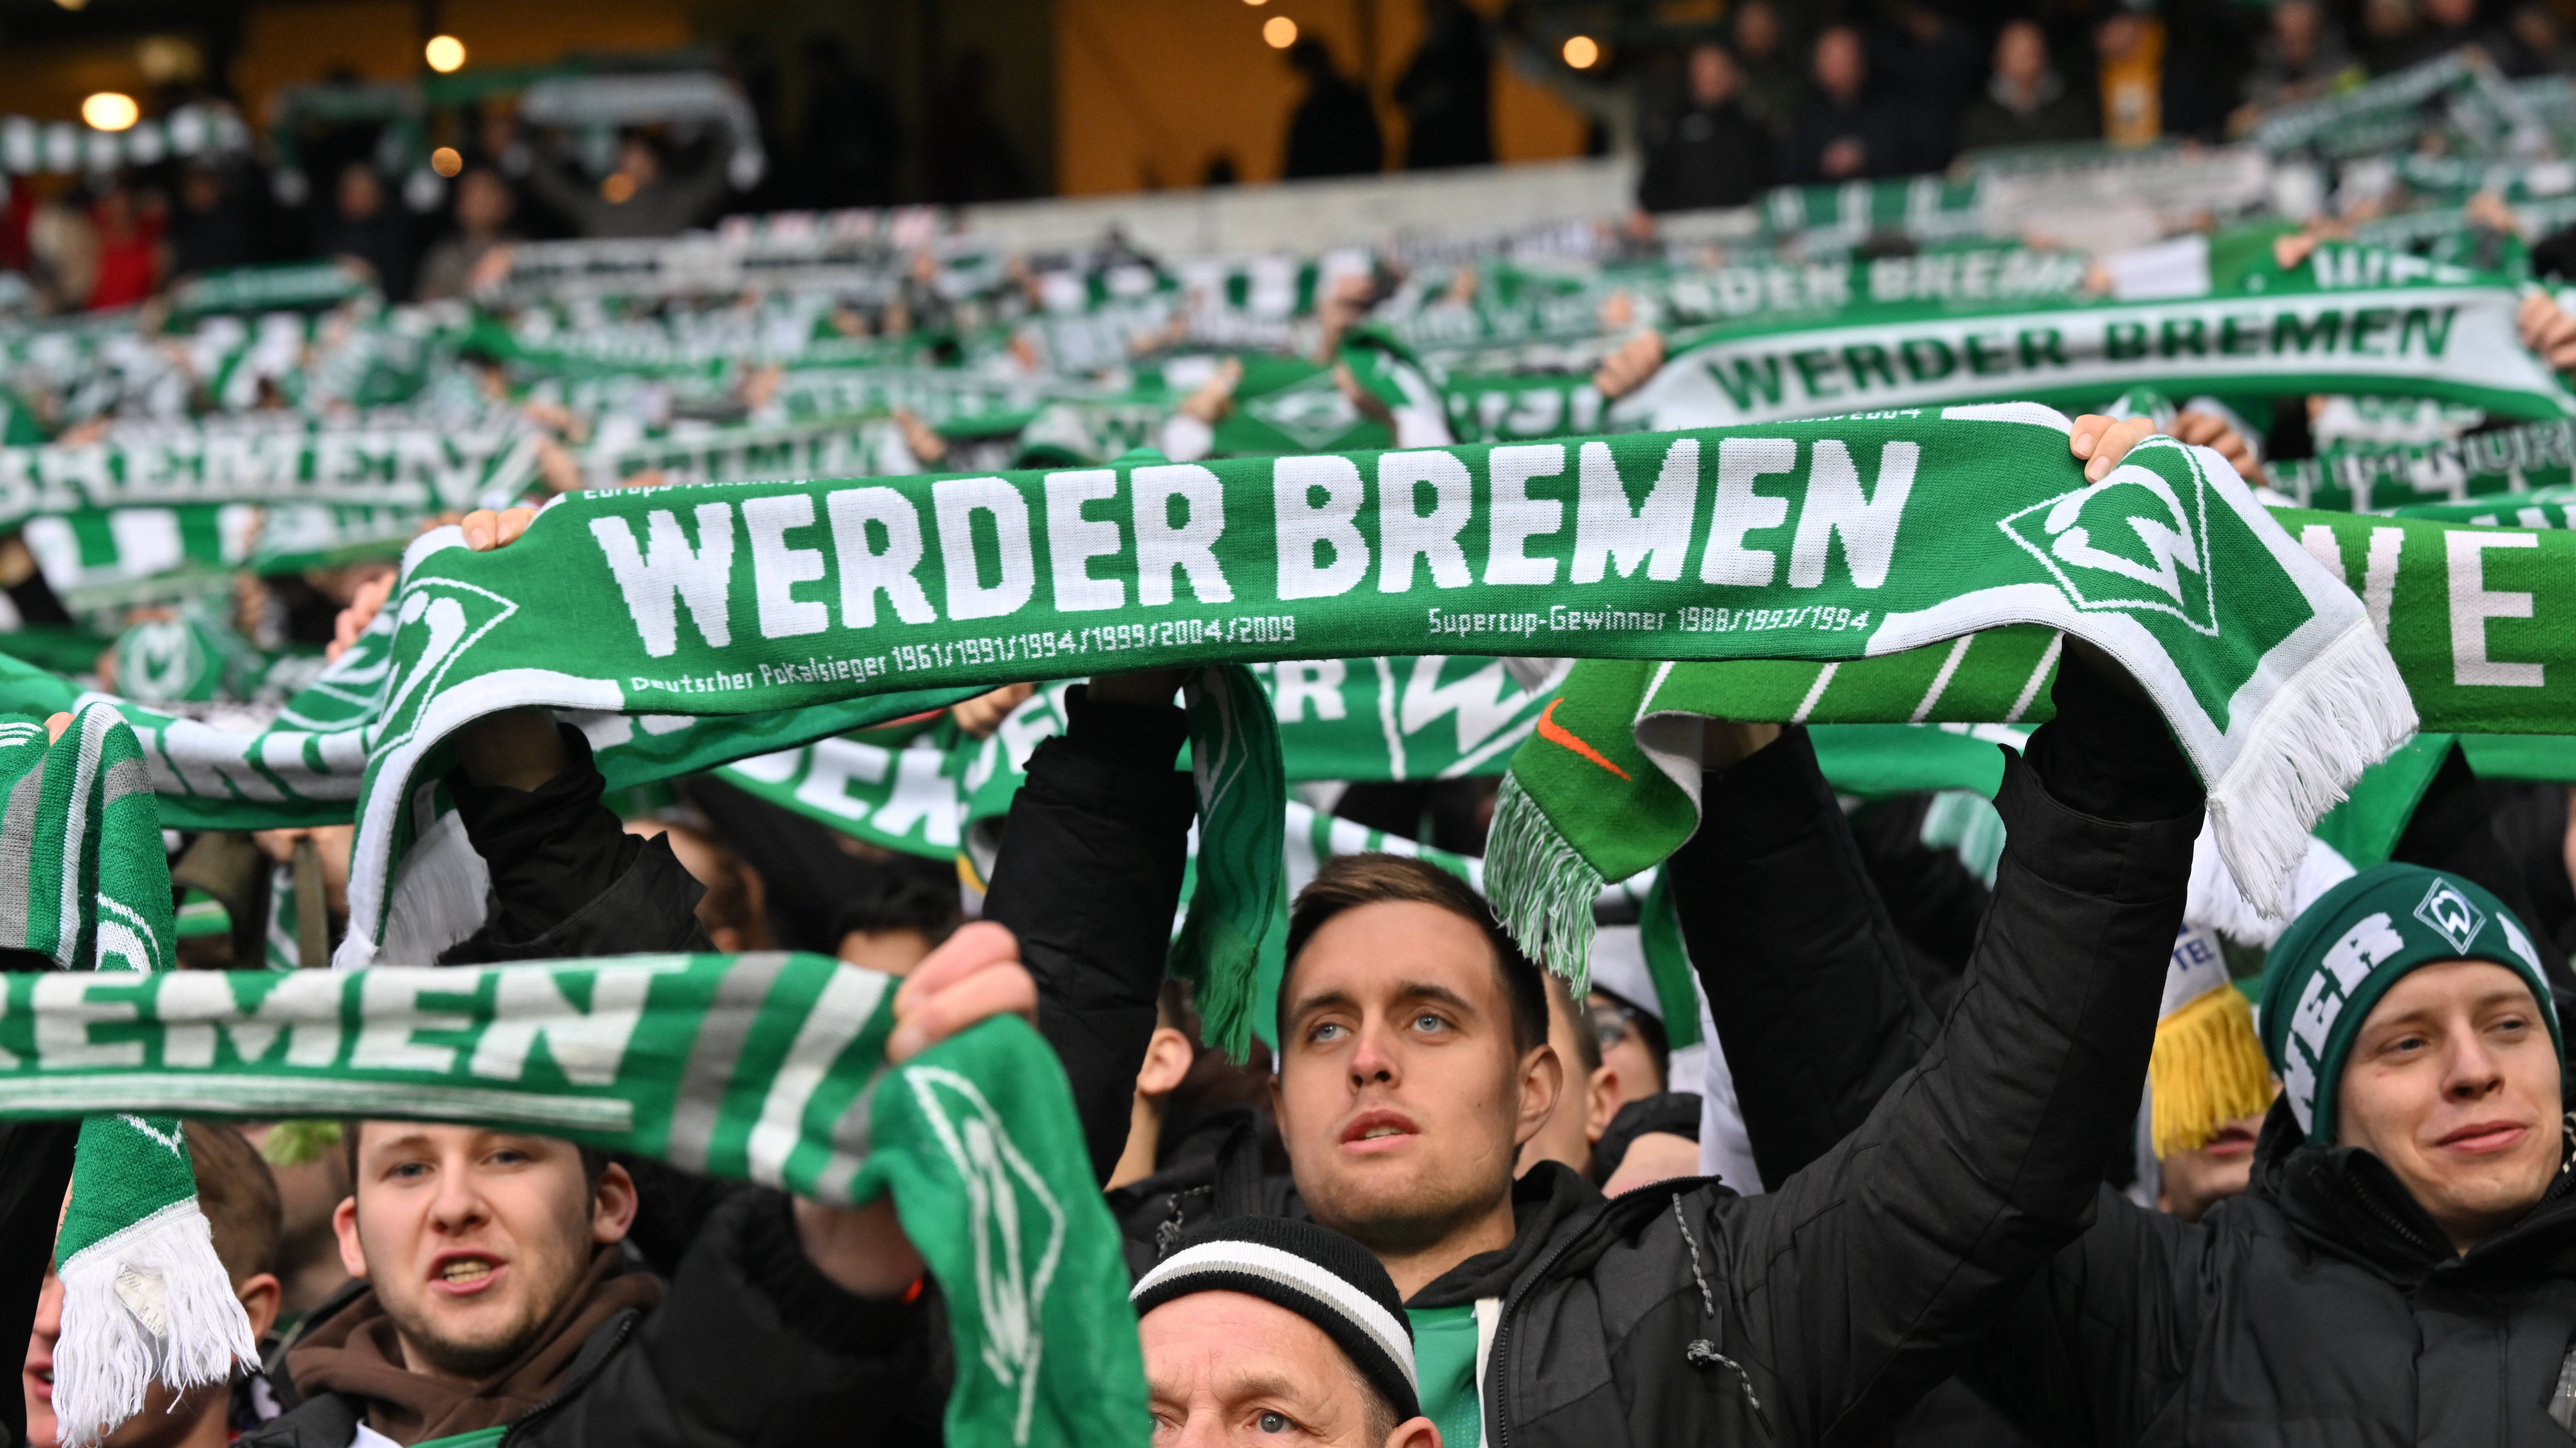 Werder Bremen fans